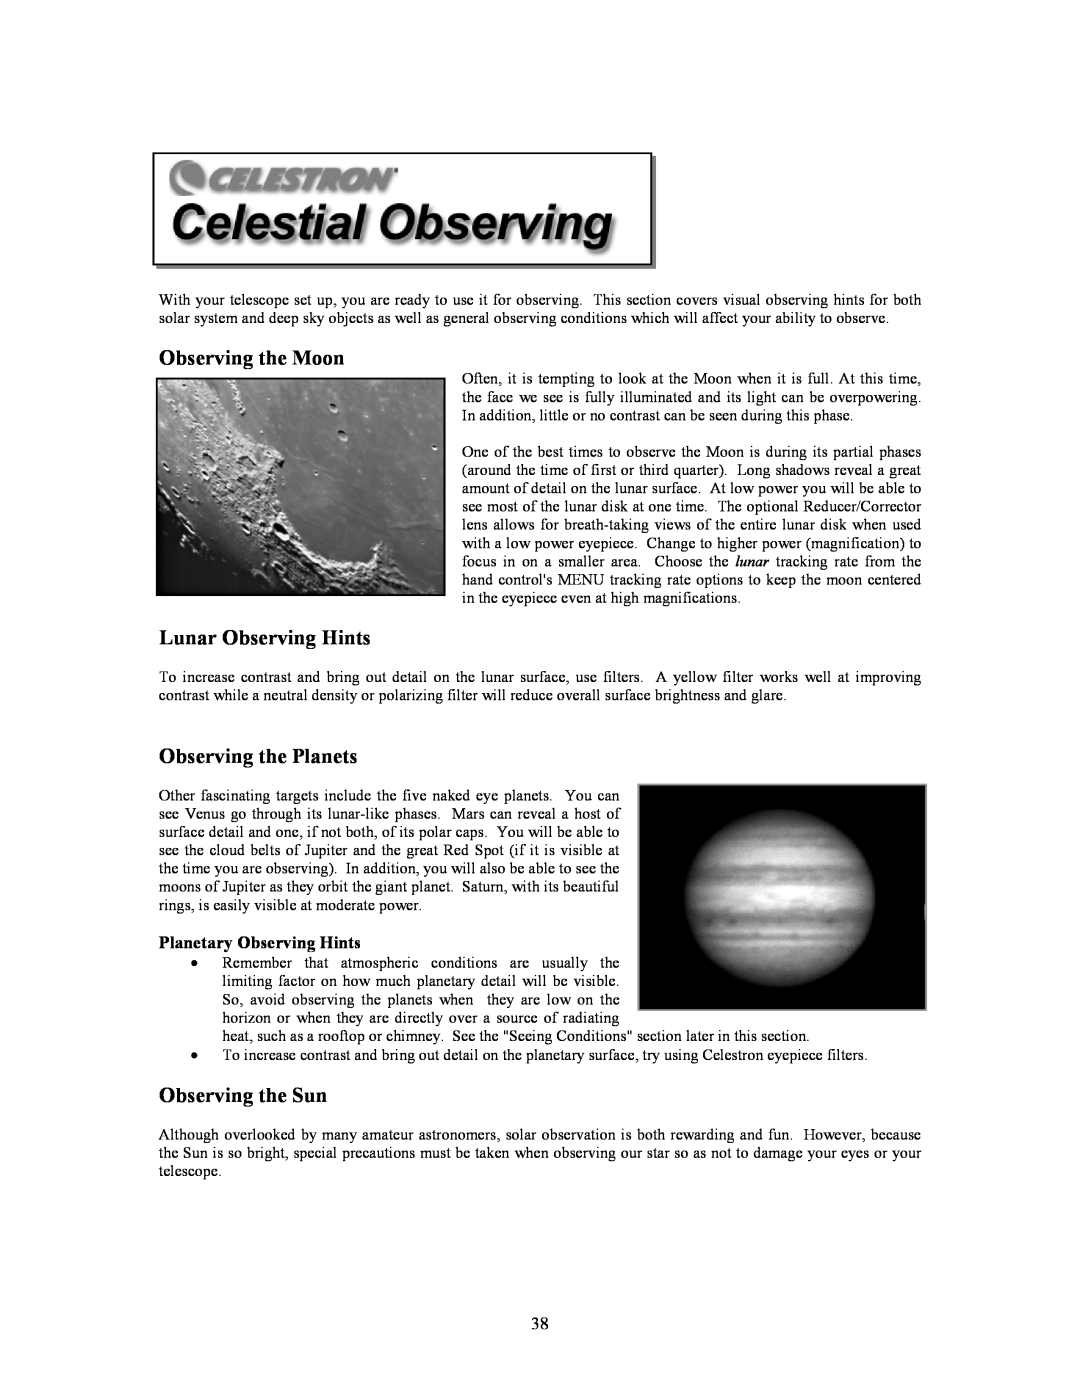 Celestron C5-S, C8-S, C9-S Observing the Moon, Lunar Observing Hints, Observing the Planets, Observing the Sun 